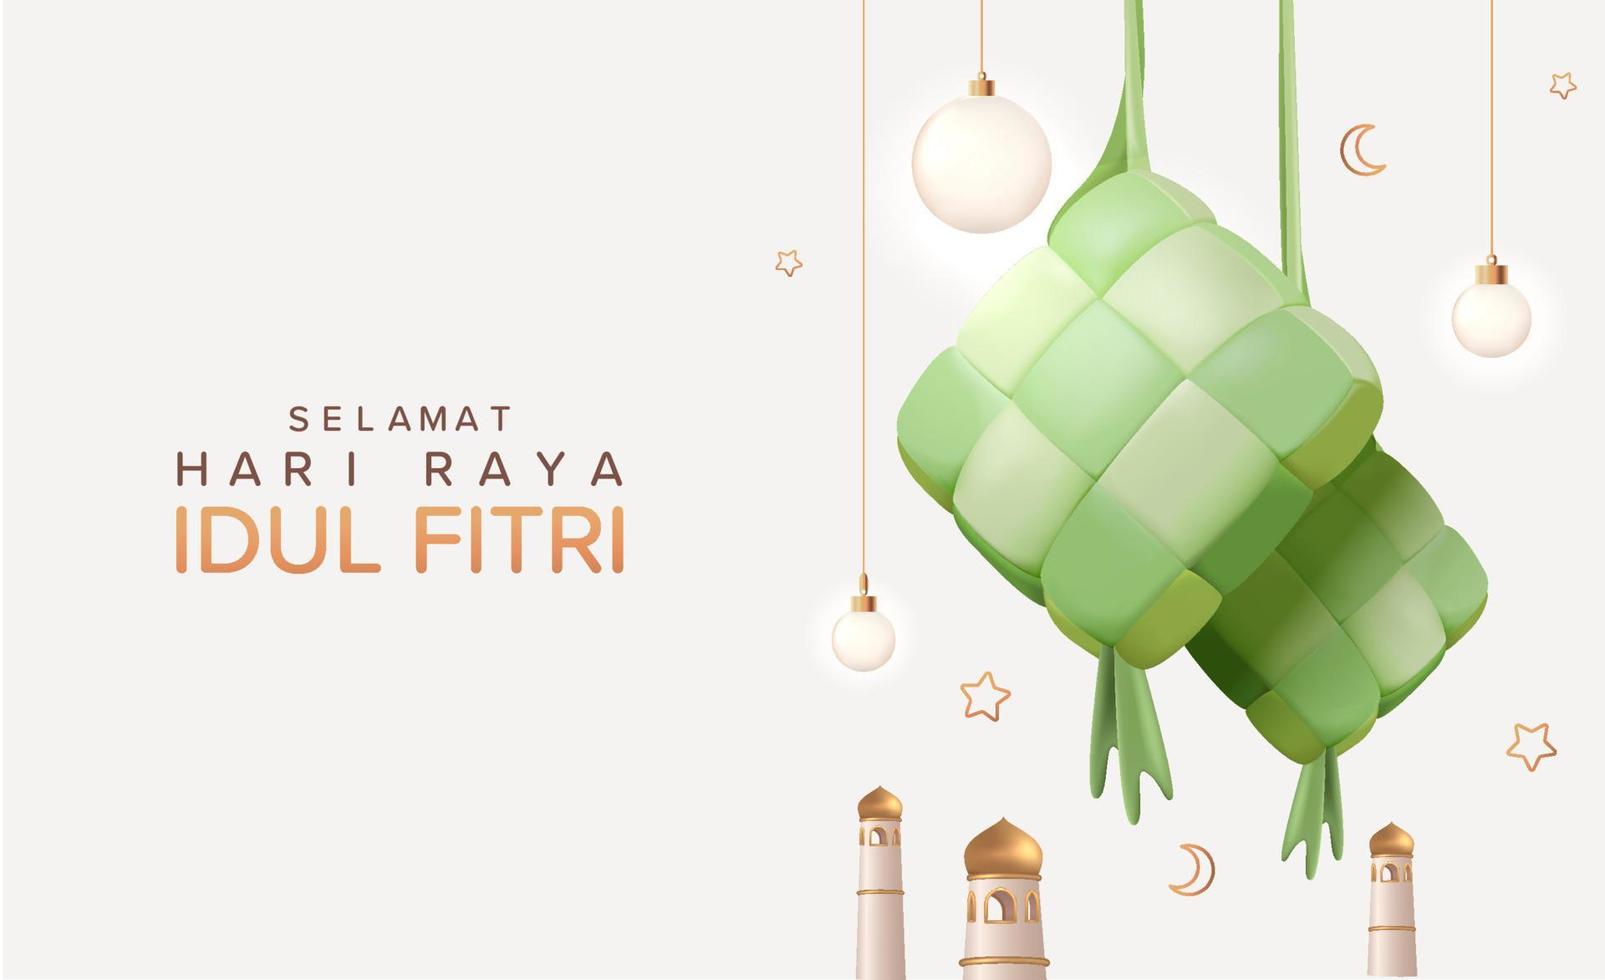 exhibición de eid mubarak con ketupat y lámparas colgantes, diseño de eid al fitr con ilustración vectorial de figurillas de elementos islámicos realistas en 3d vector